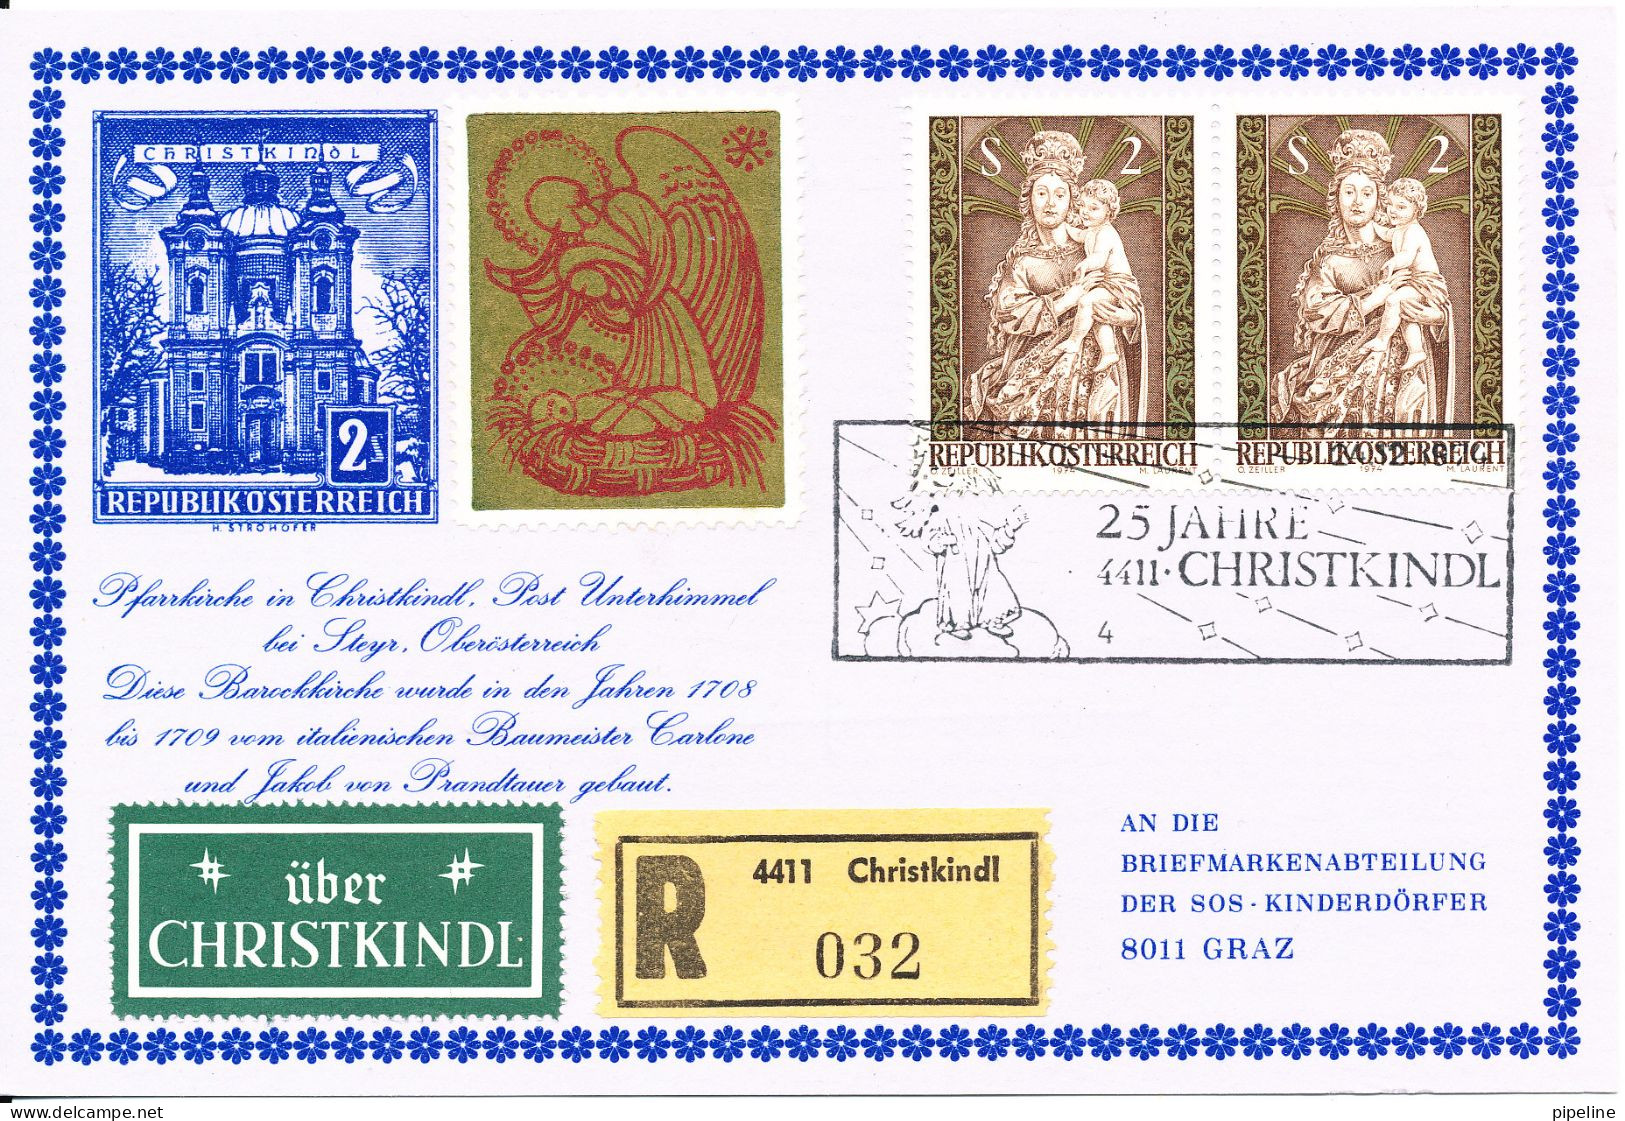 Austria Registered Card Christkindl  24-12-1974 Sent To SOS Kinderdörfer Graz - Briefe U. Dokumente